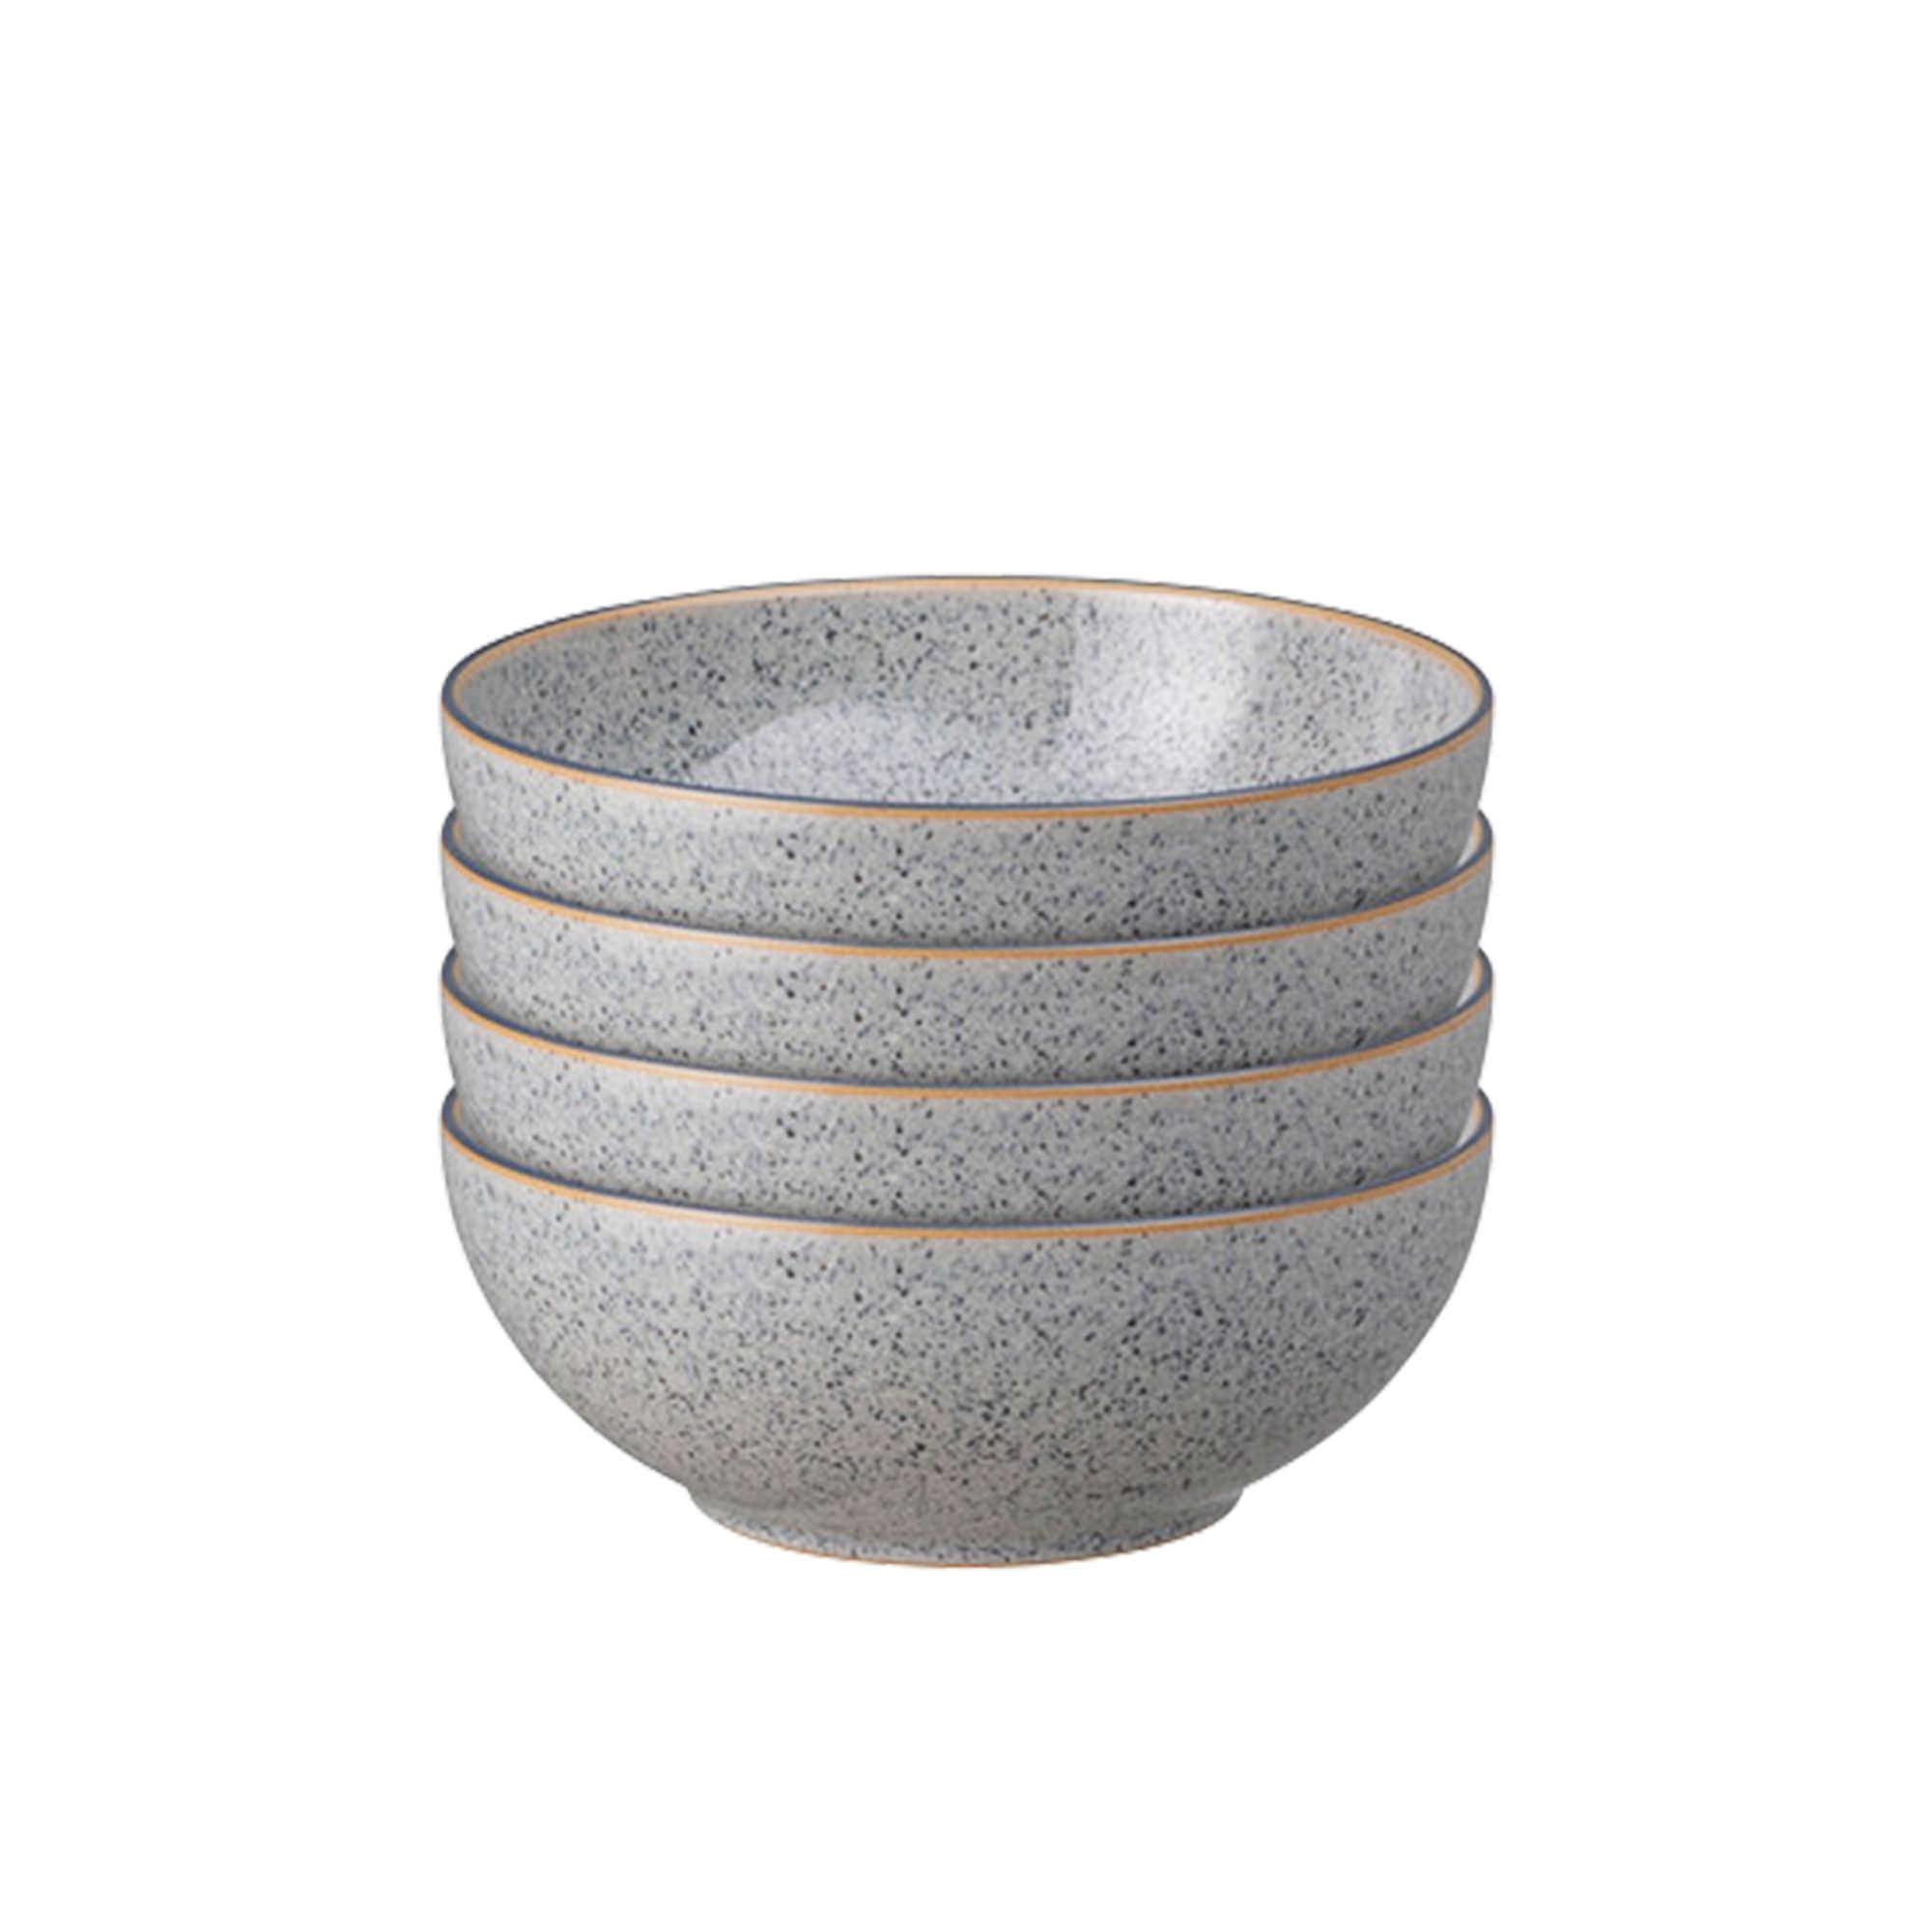 Denby Studio Grey Cereal Bowl Set of 4 Image 1